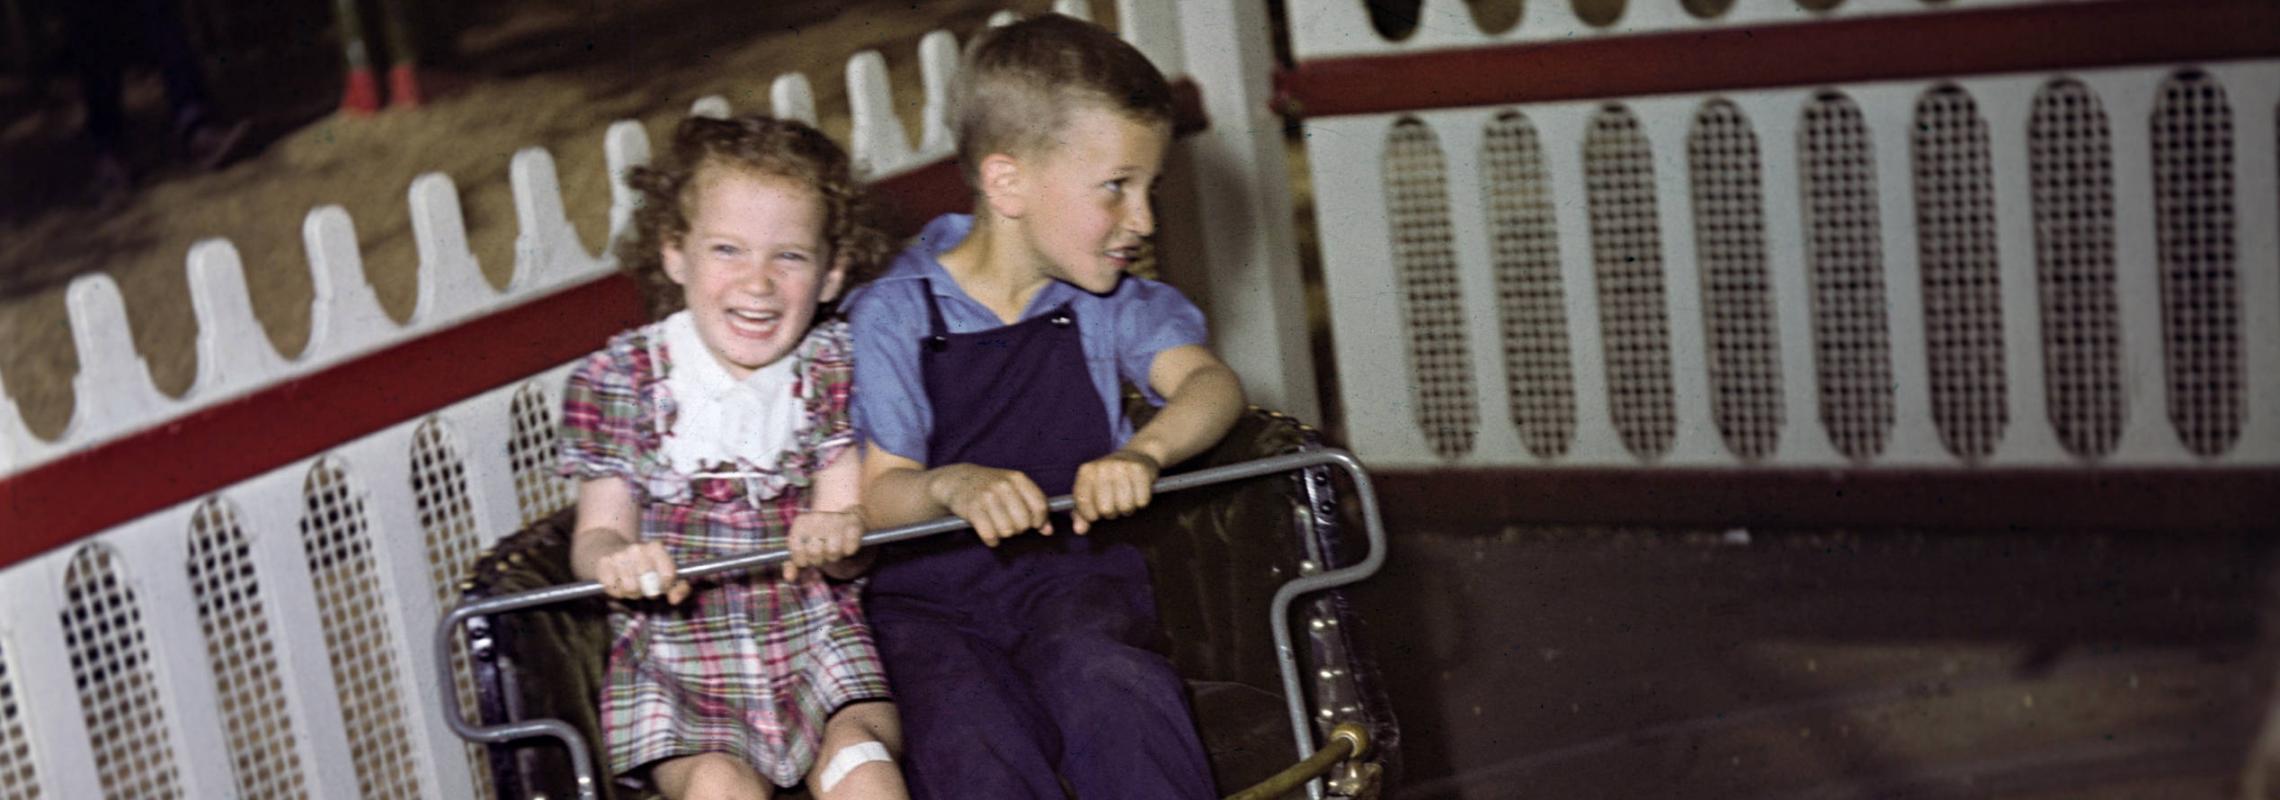 Kids on amusement park ride